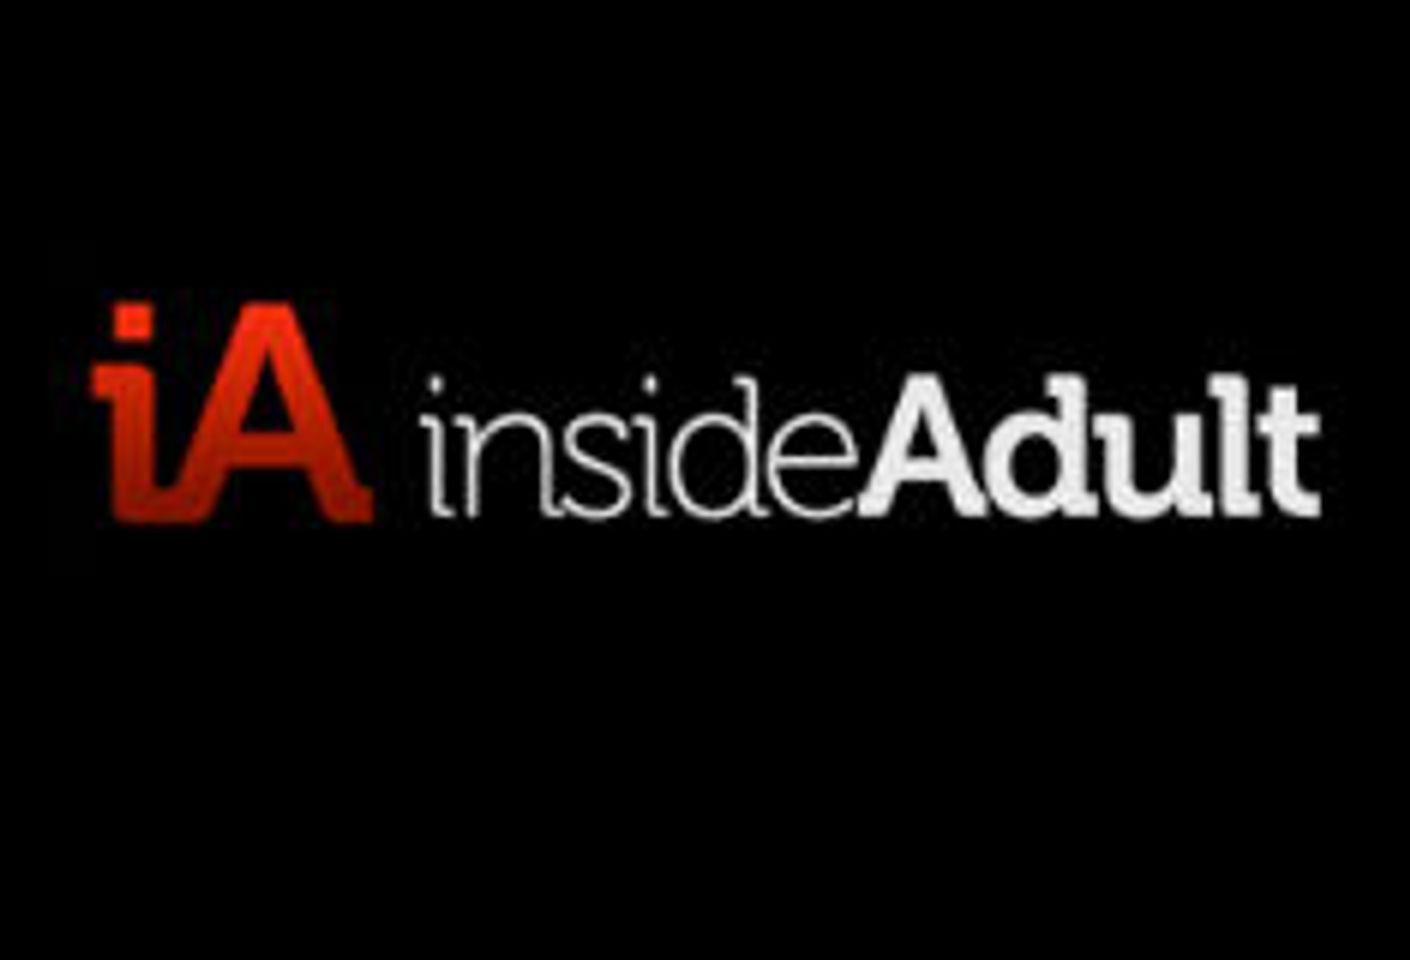 InsideAdult.com Receives AVN Award Nomination